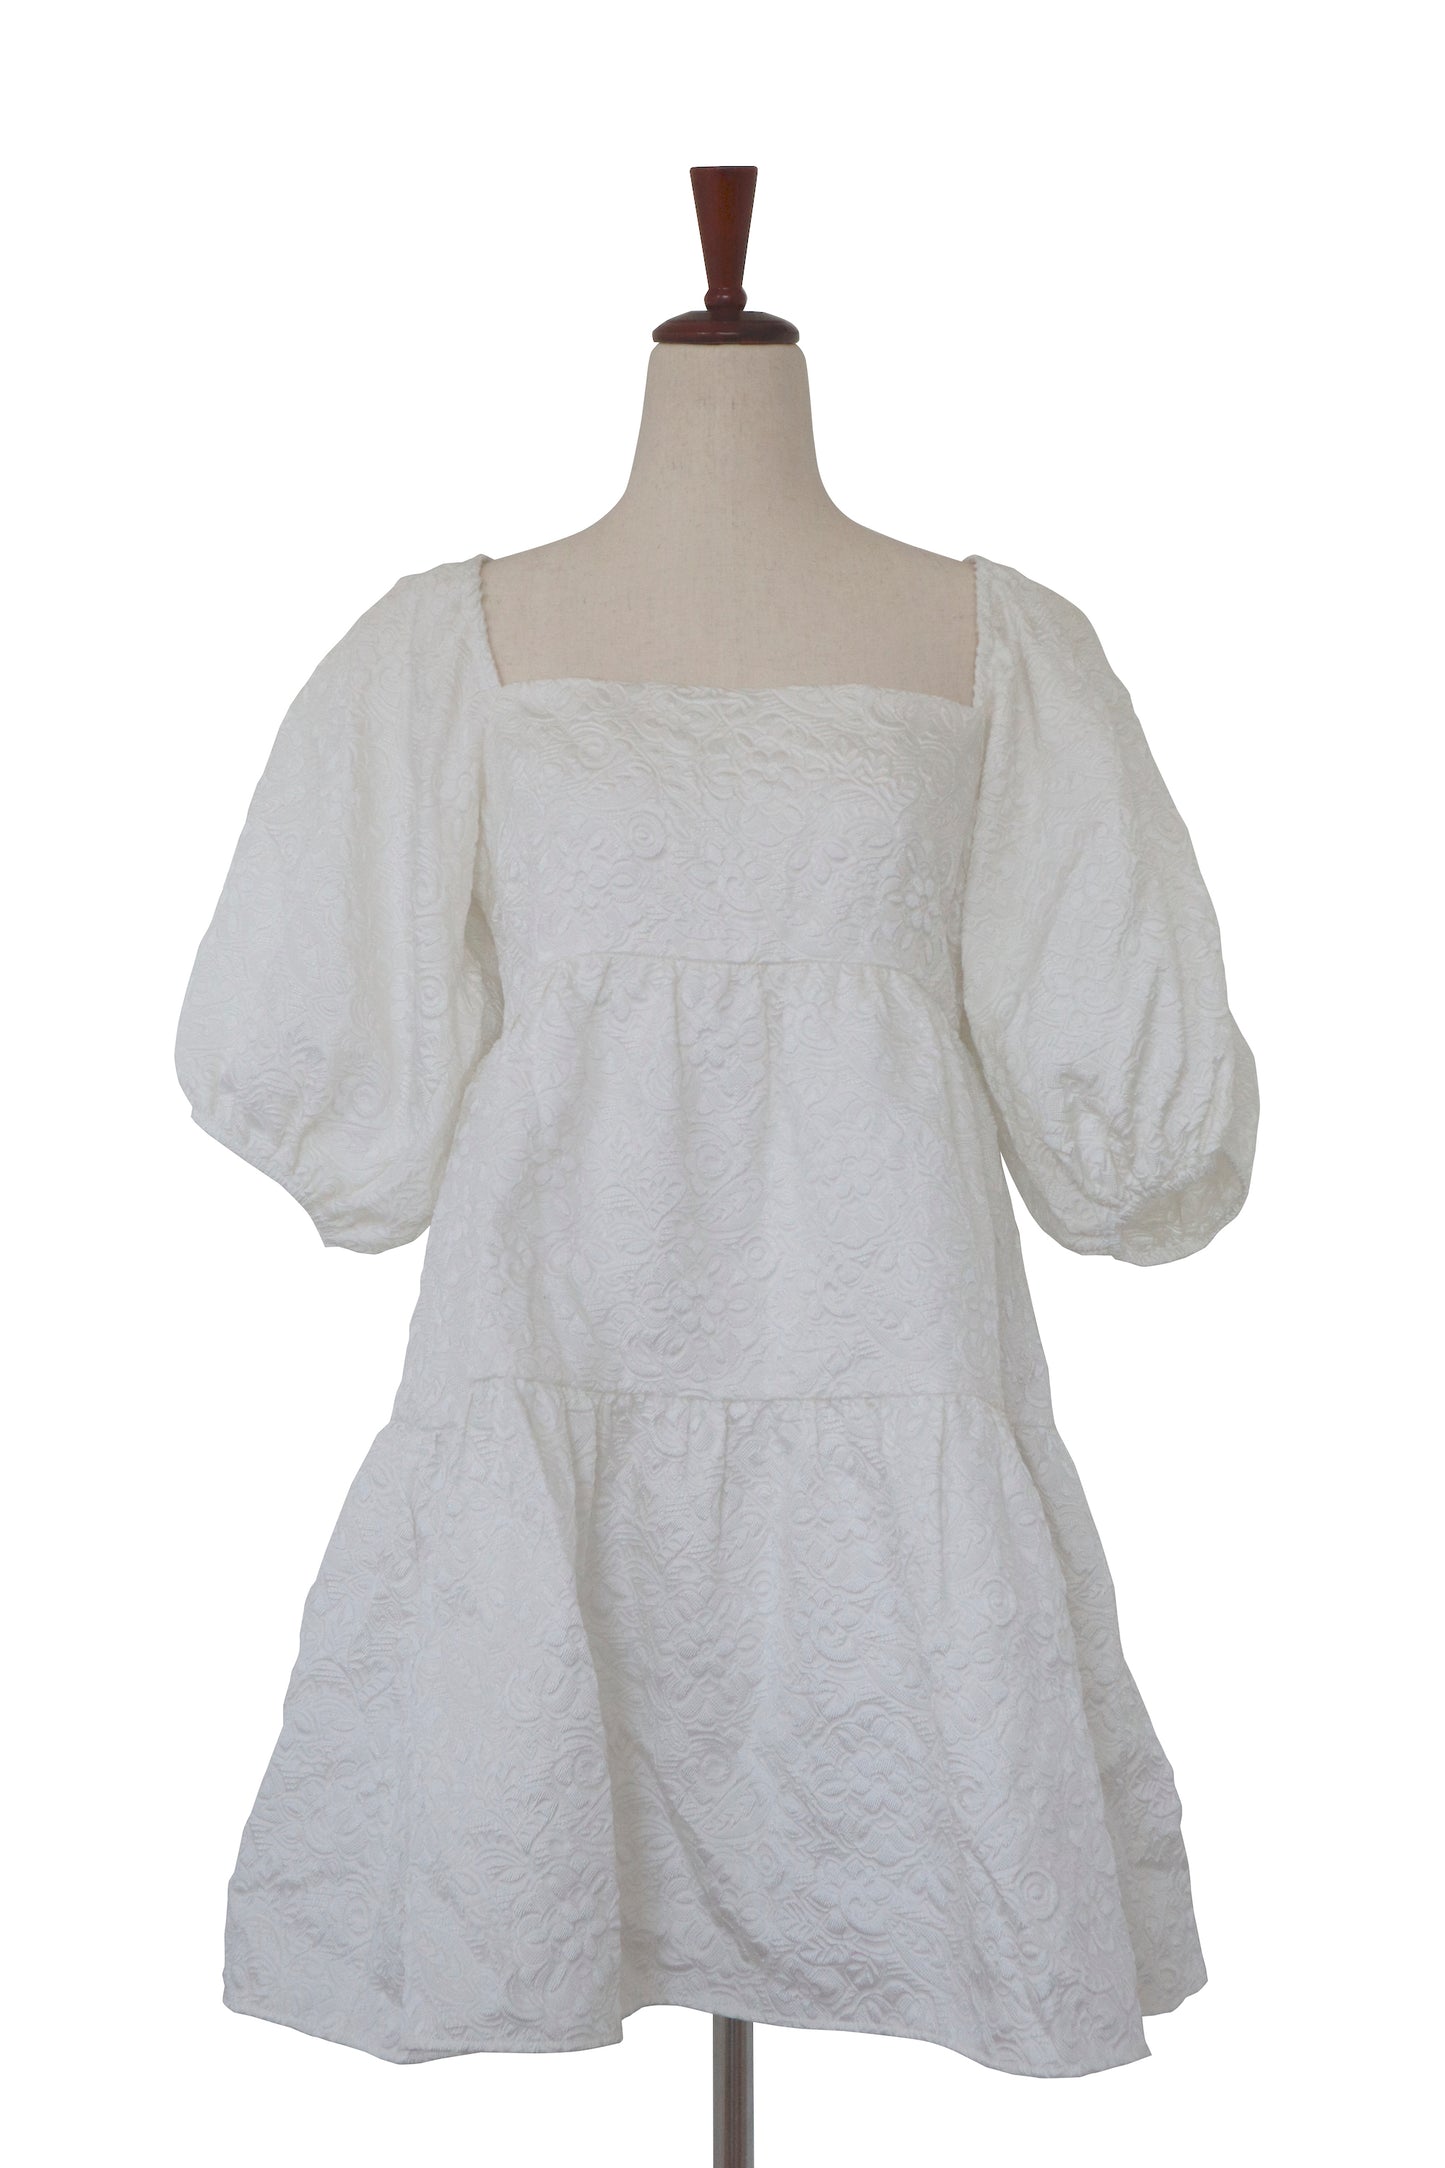 AMANDA UPRICHARD - White Dress - Size L